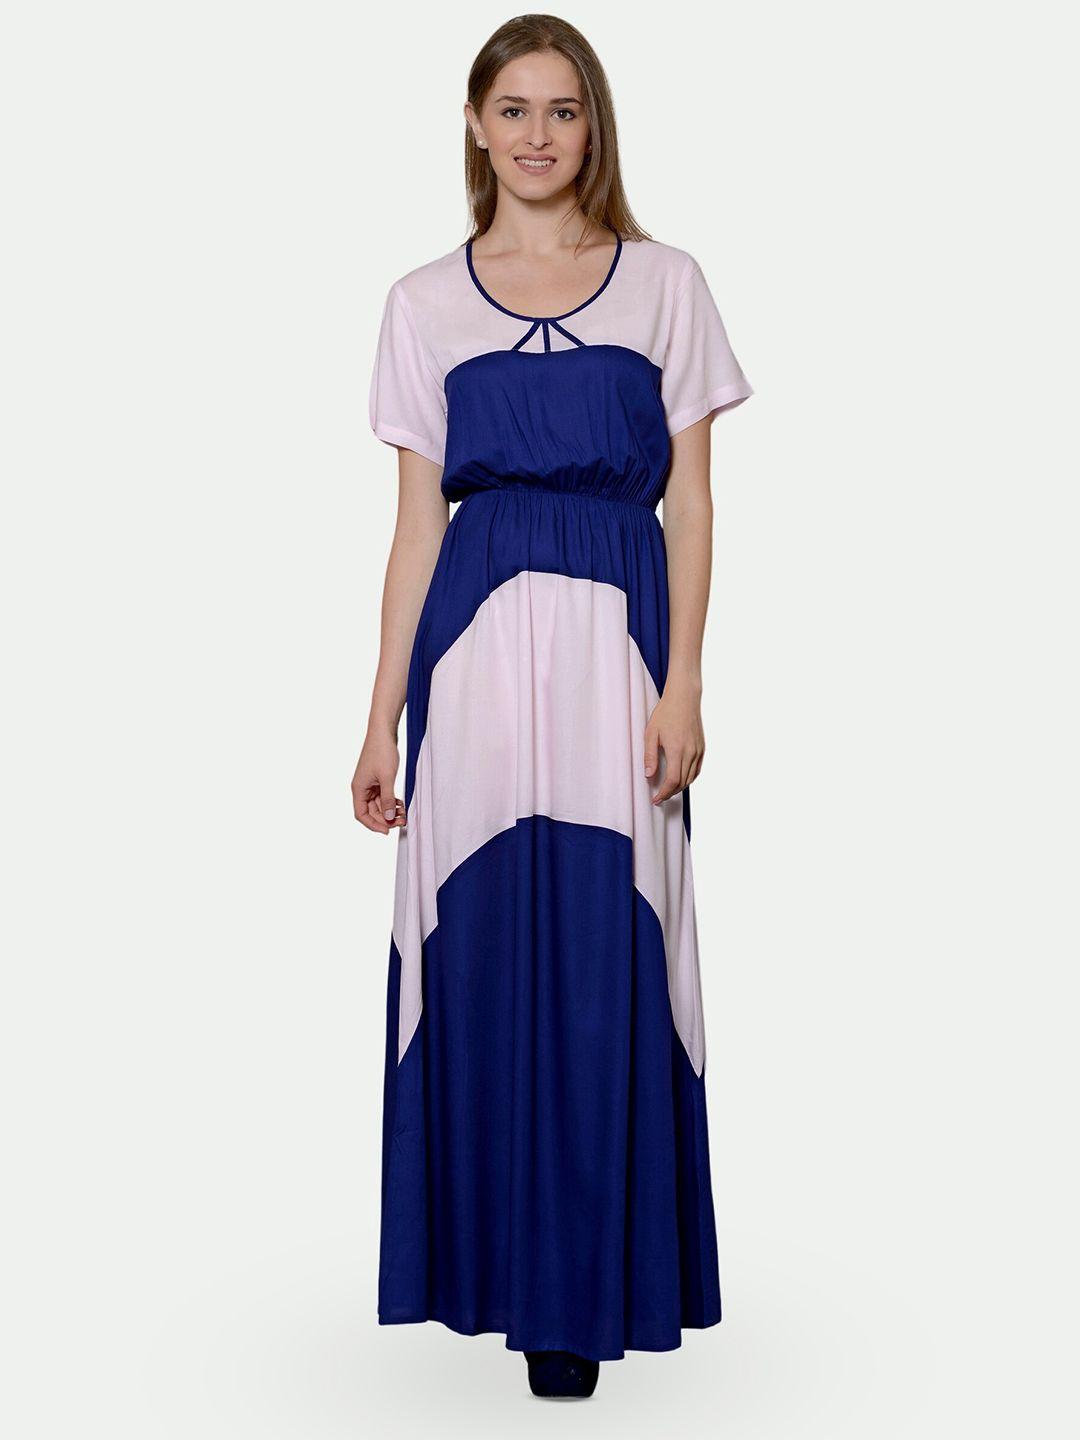 patrorna colourblocked maxi dress